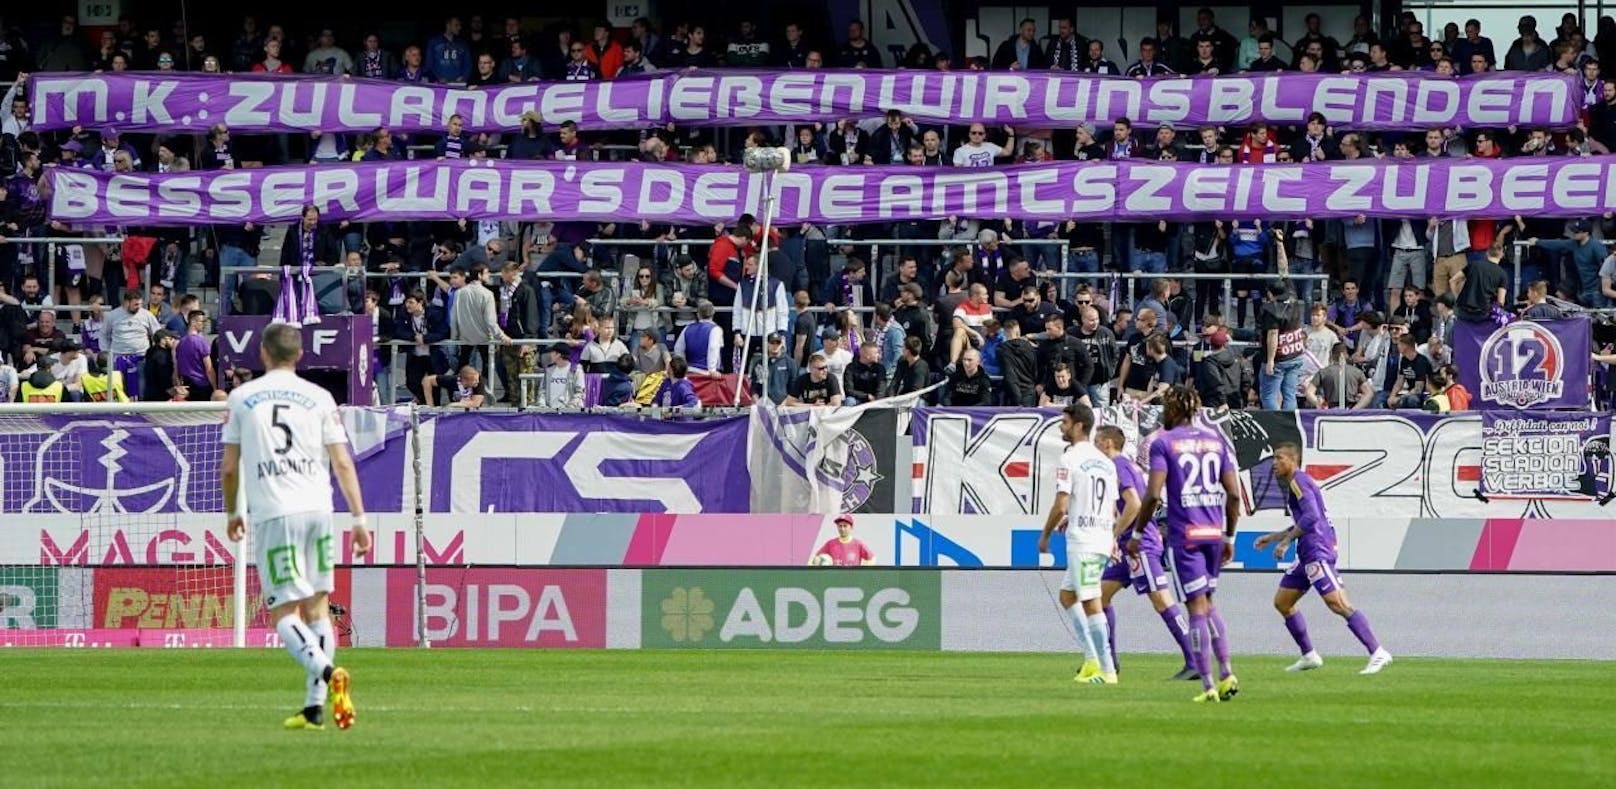 Austria-Fans protestieren mit einem Plakat gegen das Cupfinale mit Rapid im eigenen Stadion.Foto: DIENER